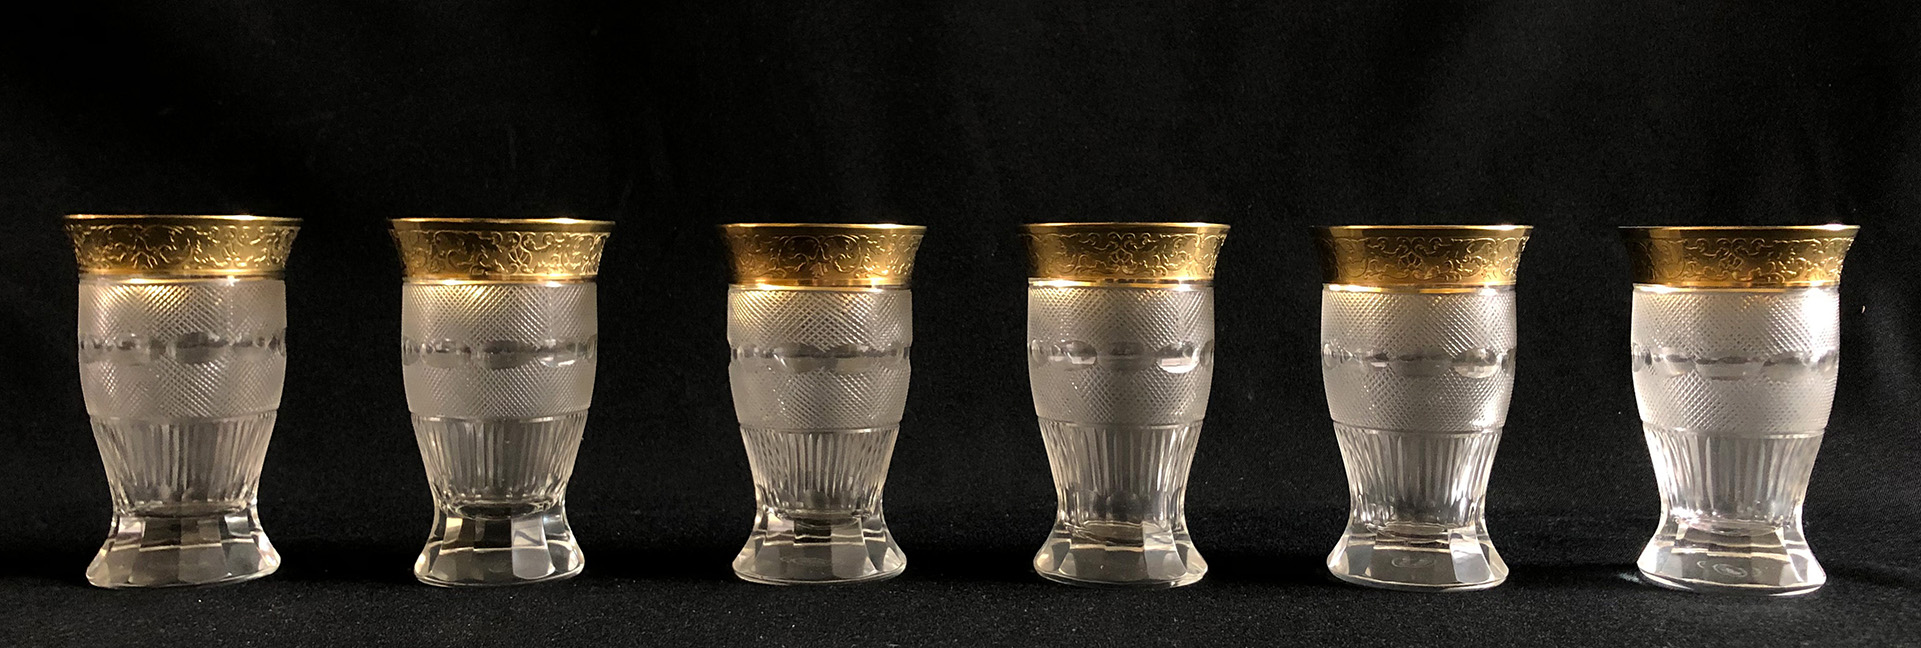 Großes Konvolut verschiedene Moser Gläser Goldrand mit Zierband, 2 x H. 22 cm ; 6 x H. 15 cm, 6 x - Image 13 of 17